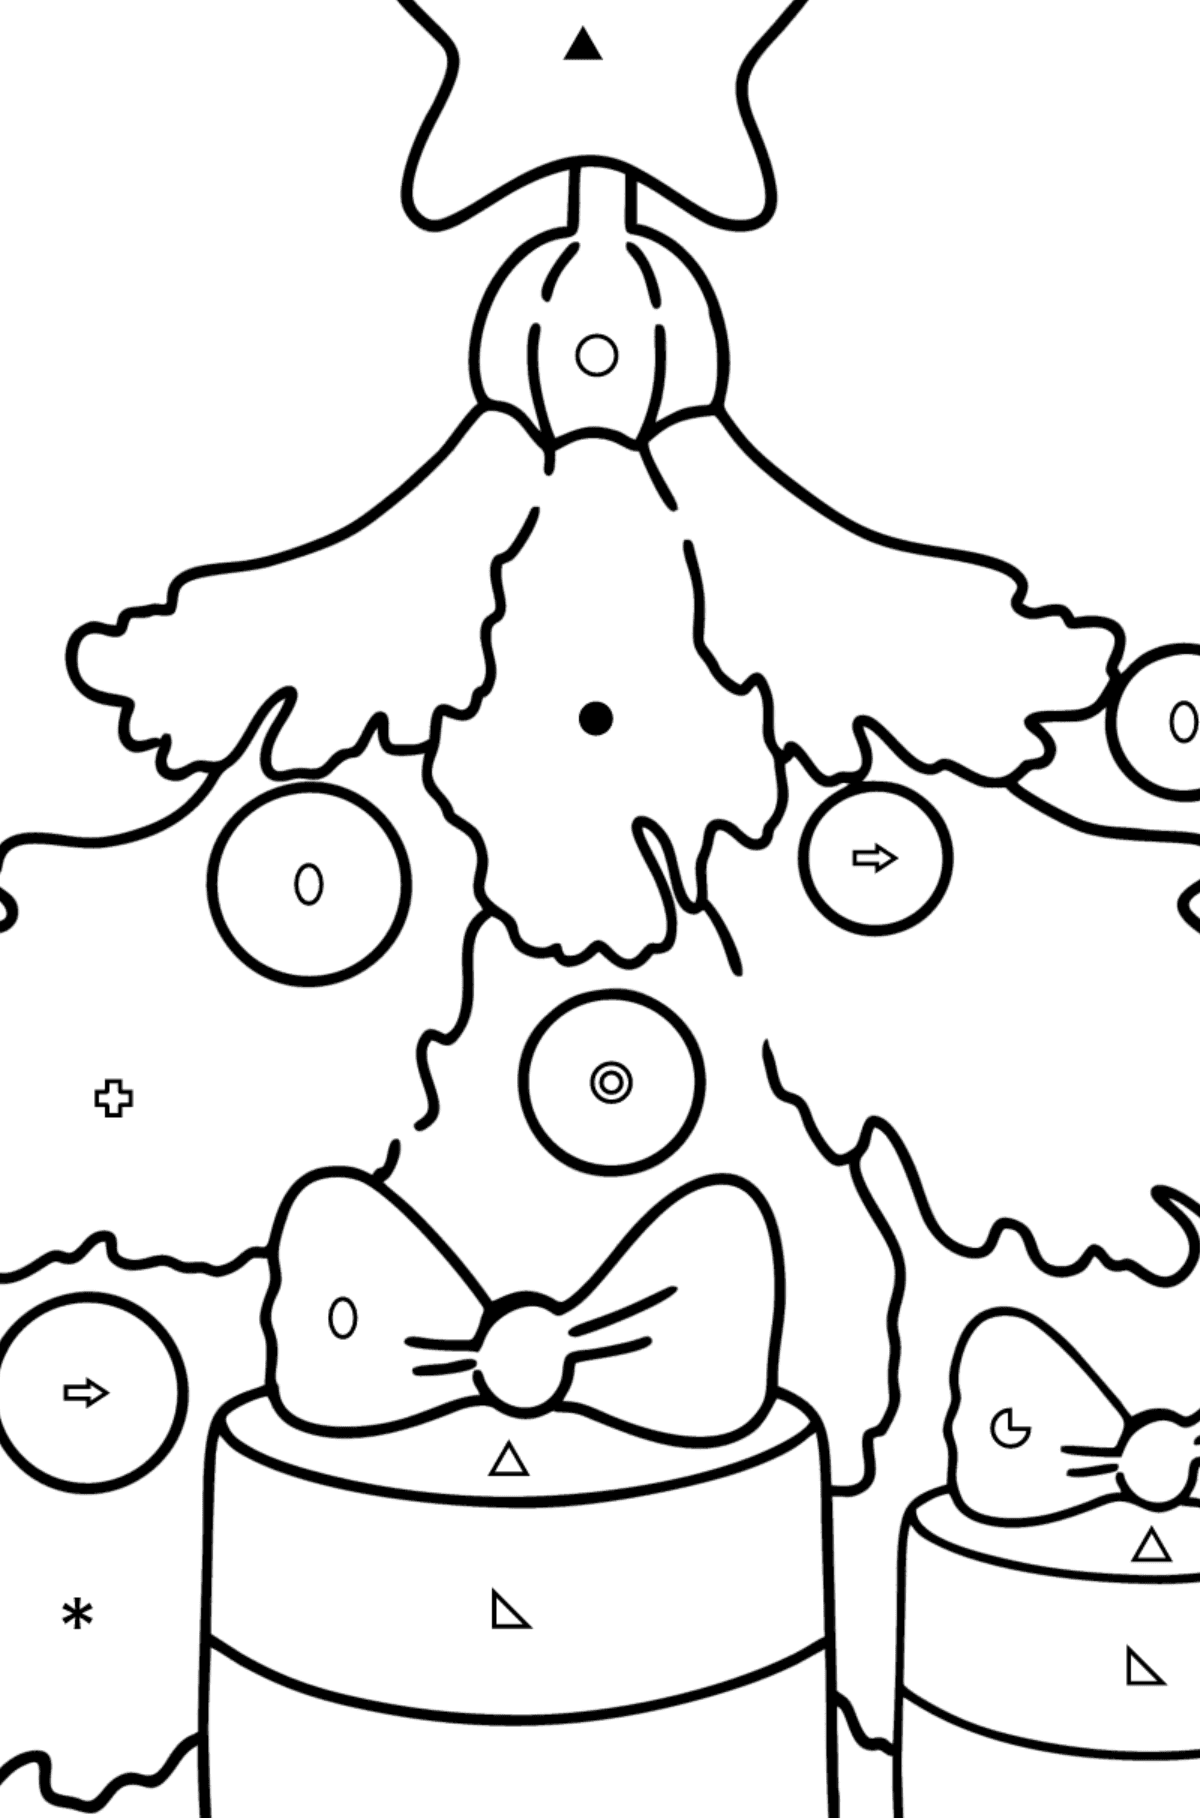 Kleurplaat Kerstboom en cadeaus - Kleuren op symbolen werkbladen voor kinderen